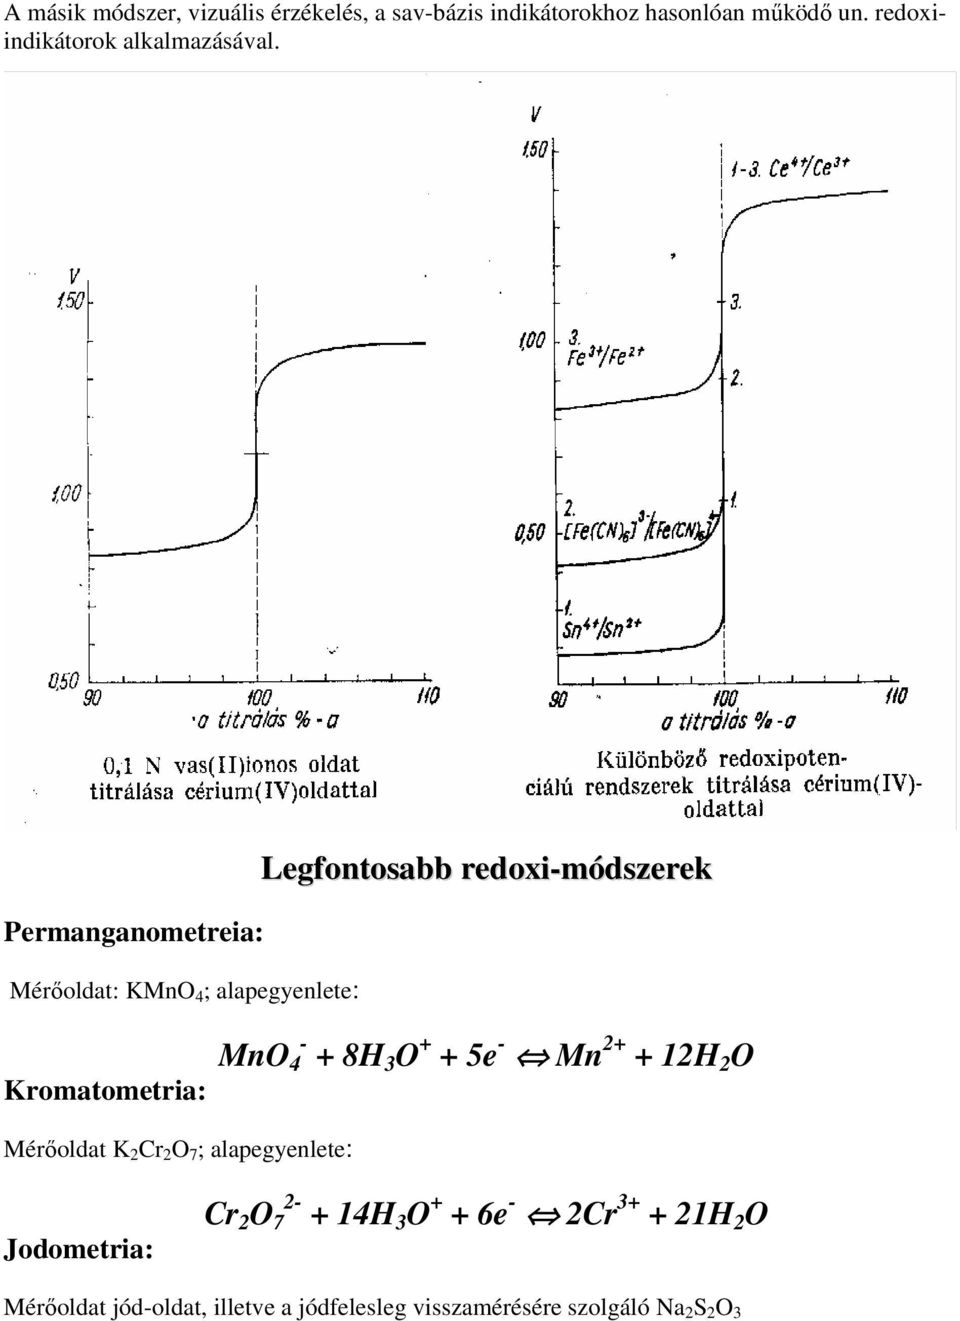 Permanganometreia: Mérıoldat: KMnO 4 ; alapegyenlete: Legfontosabb redoxi-módszerek Kromatometria: MnO 4 - +